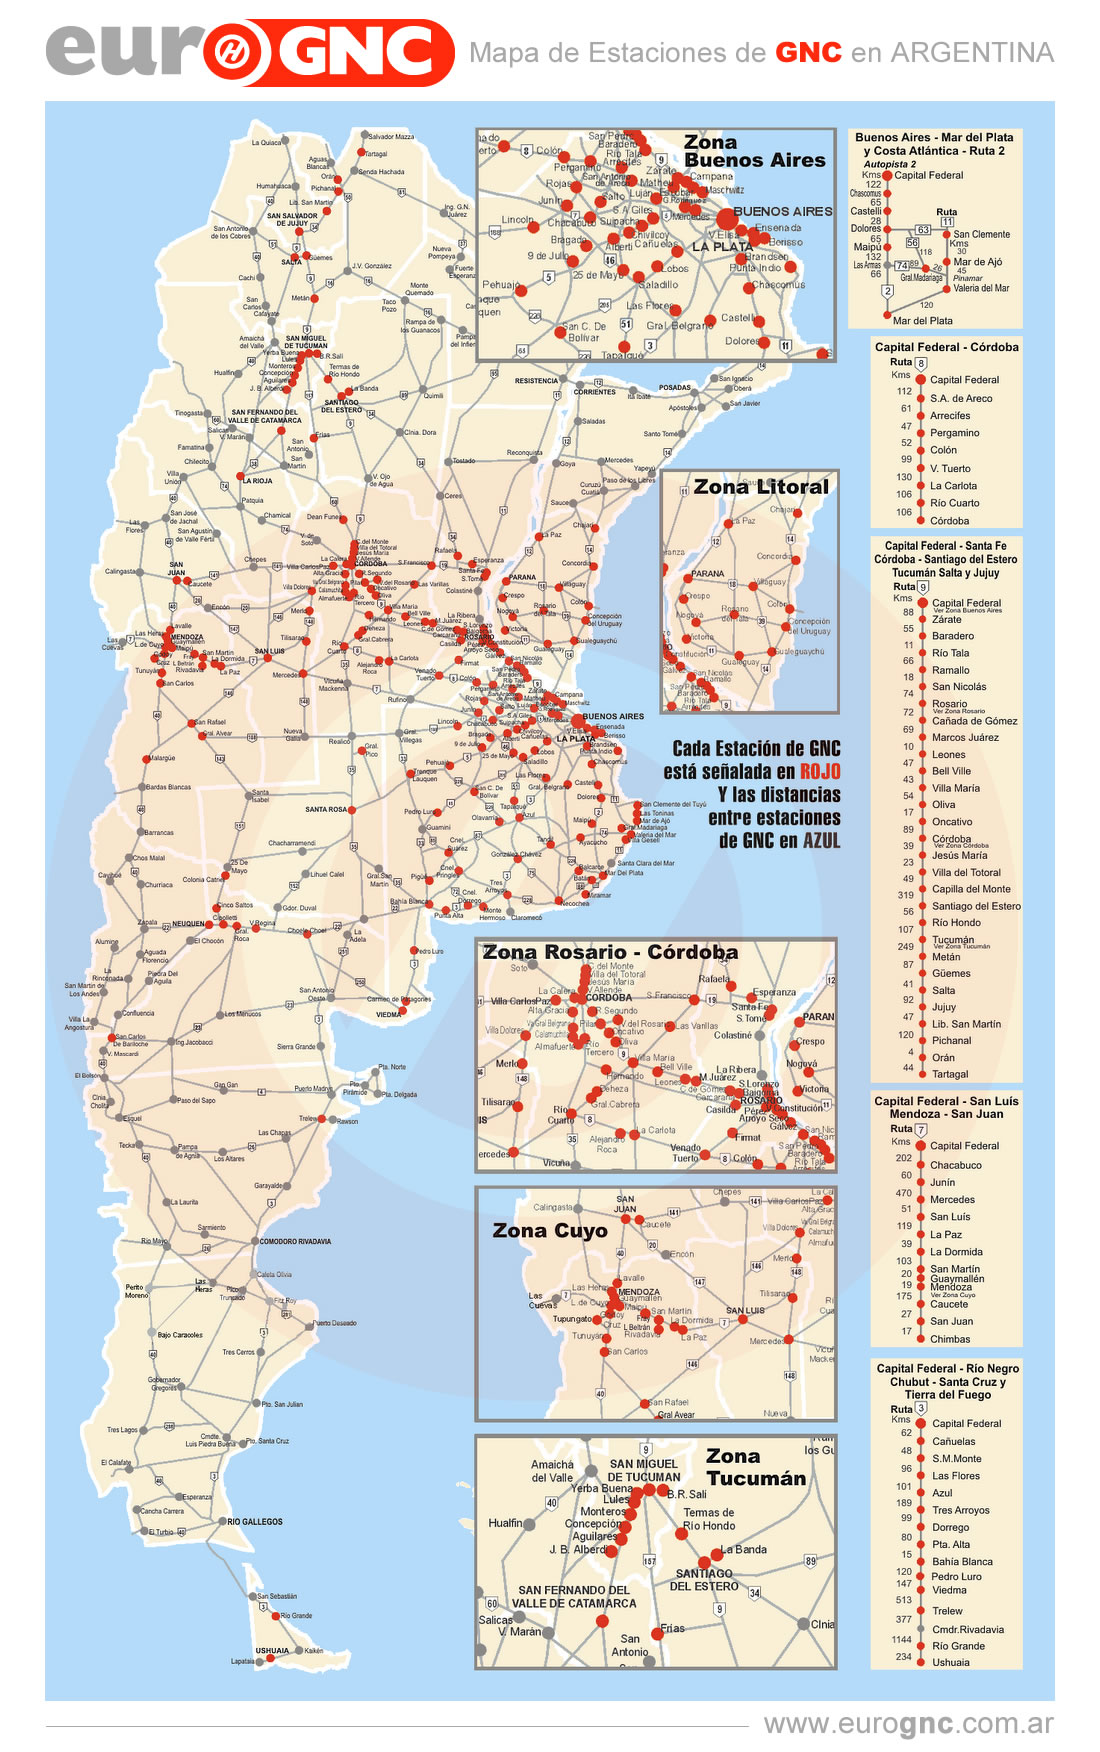  Mapa de Estaciones de GNC Argentina